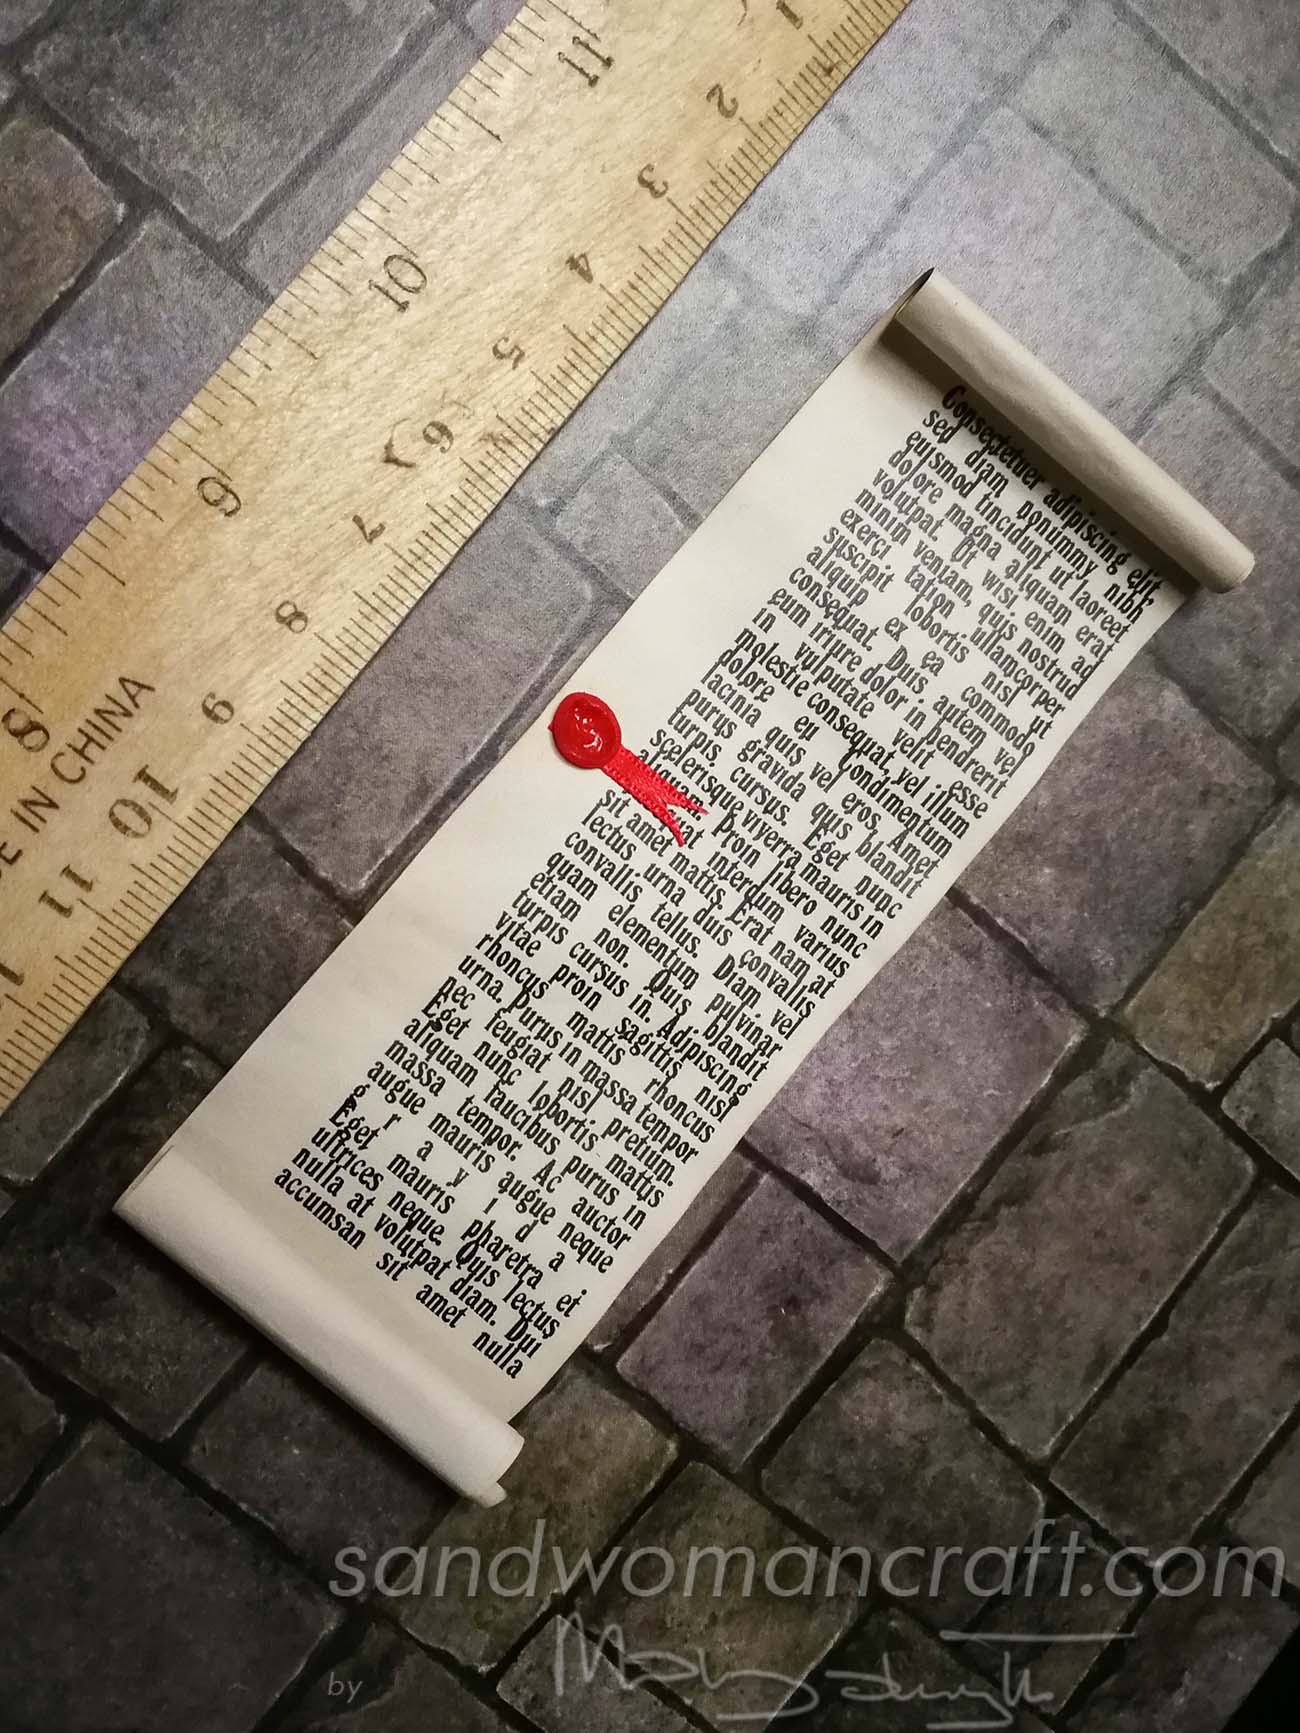 Miniature scrolls in 1:6 scale